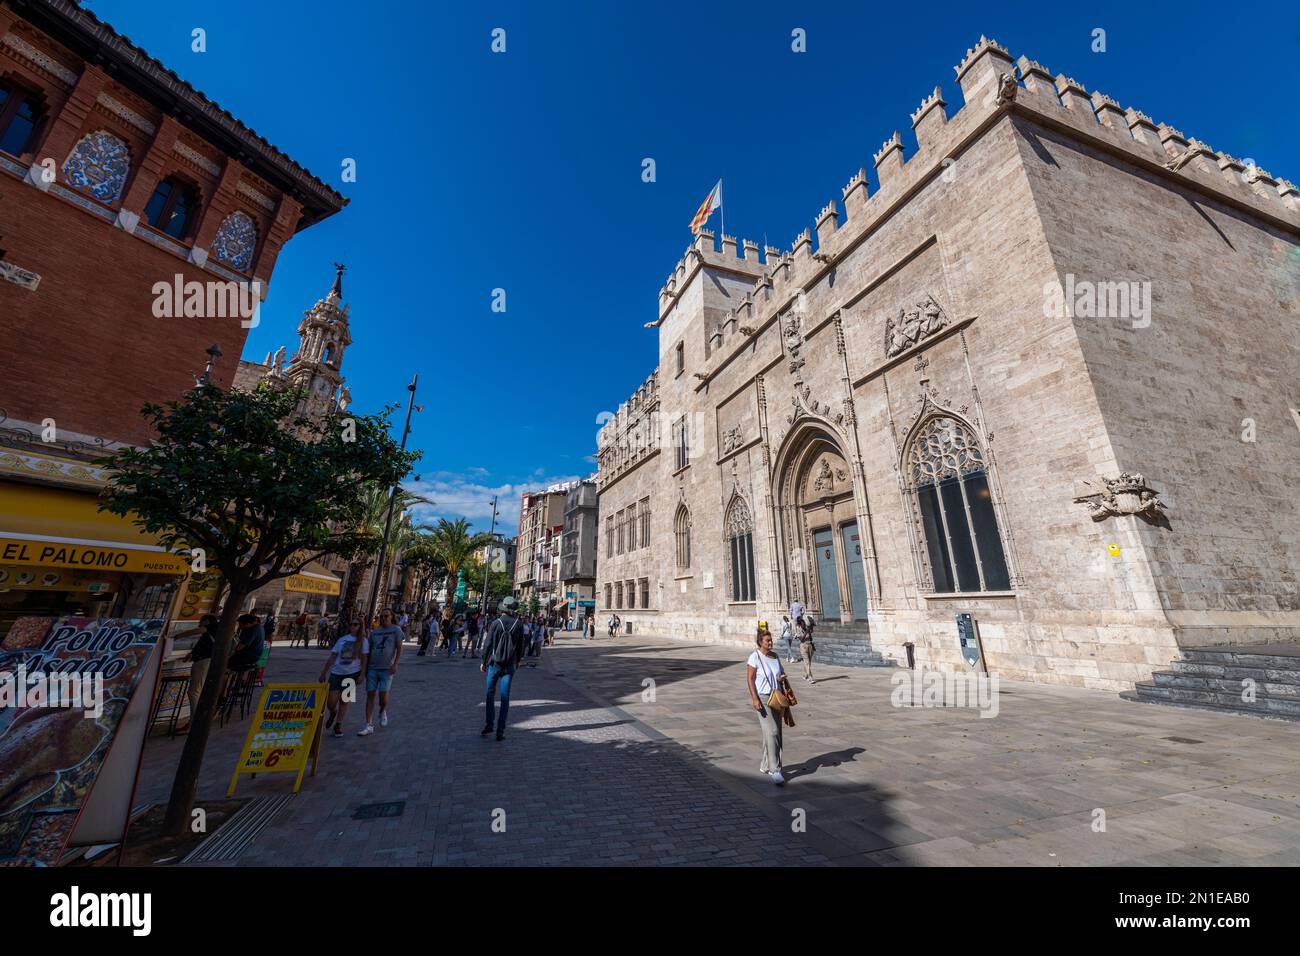 Lonja de la Seda Palace, site classé au patrimoine mondial de l'UNESCO, Valence, Espagne, Europe Banque D'Images